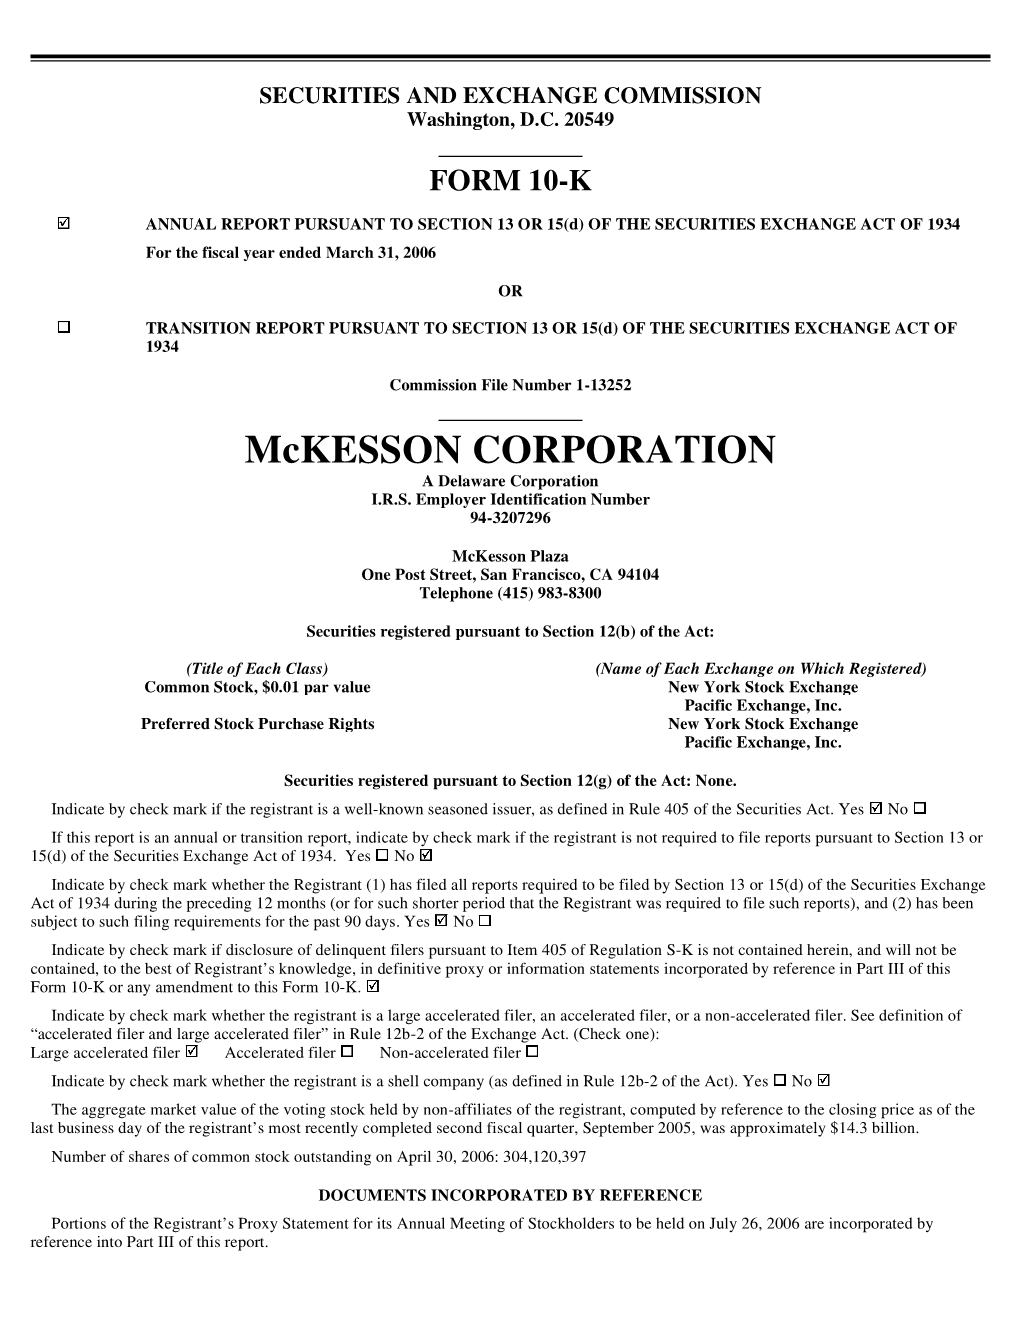 Mckesson CORPORATION a Delaware Corporation I.R.S